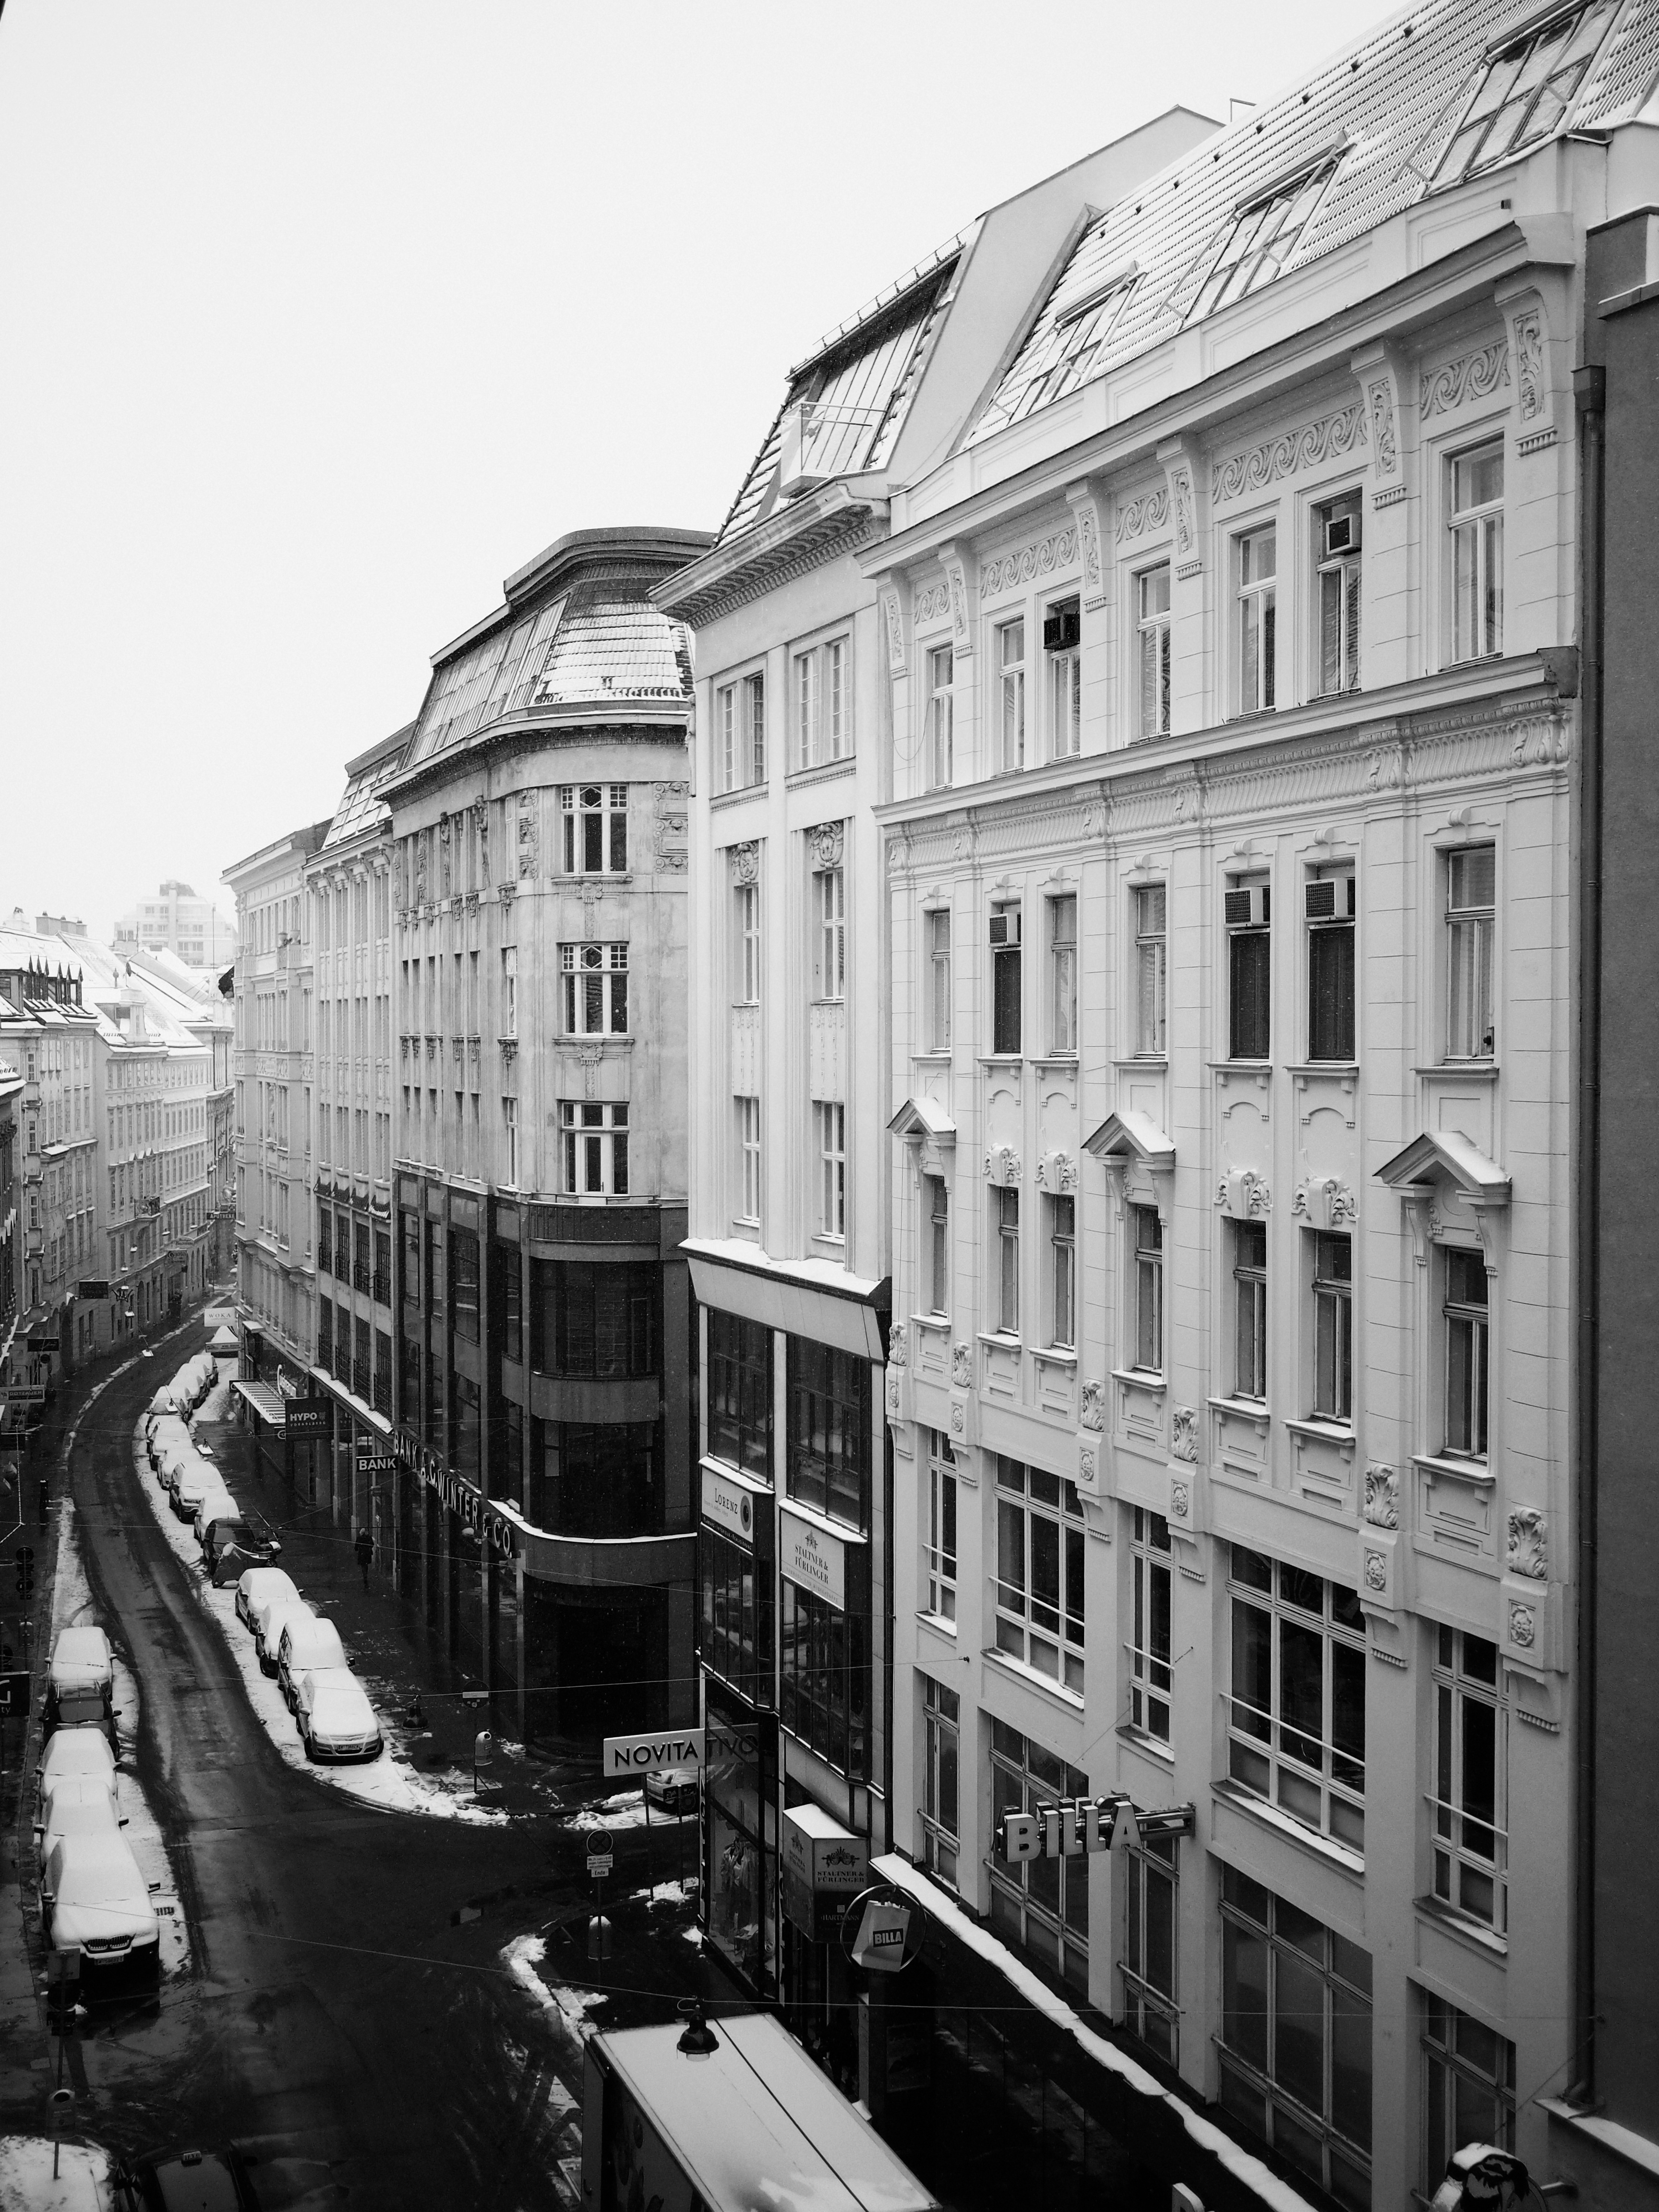 Snowy Street in Vienna Austria